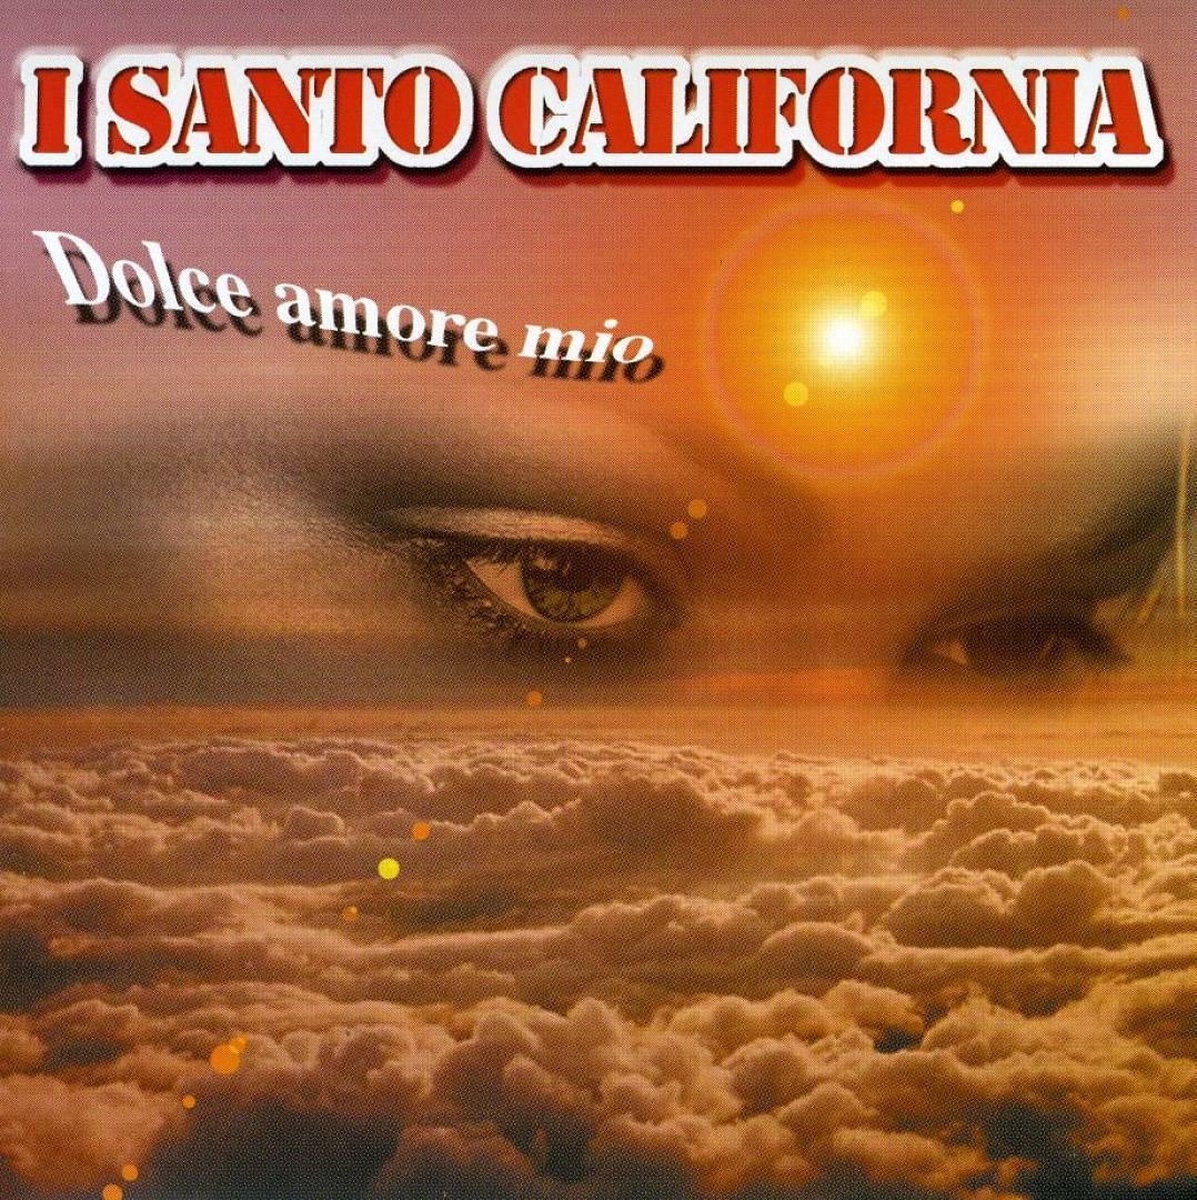 Dolce Amore Mio - I Santo California